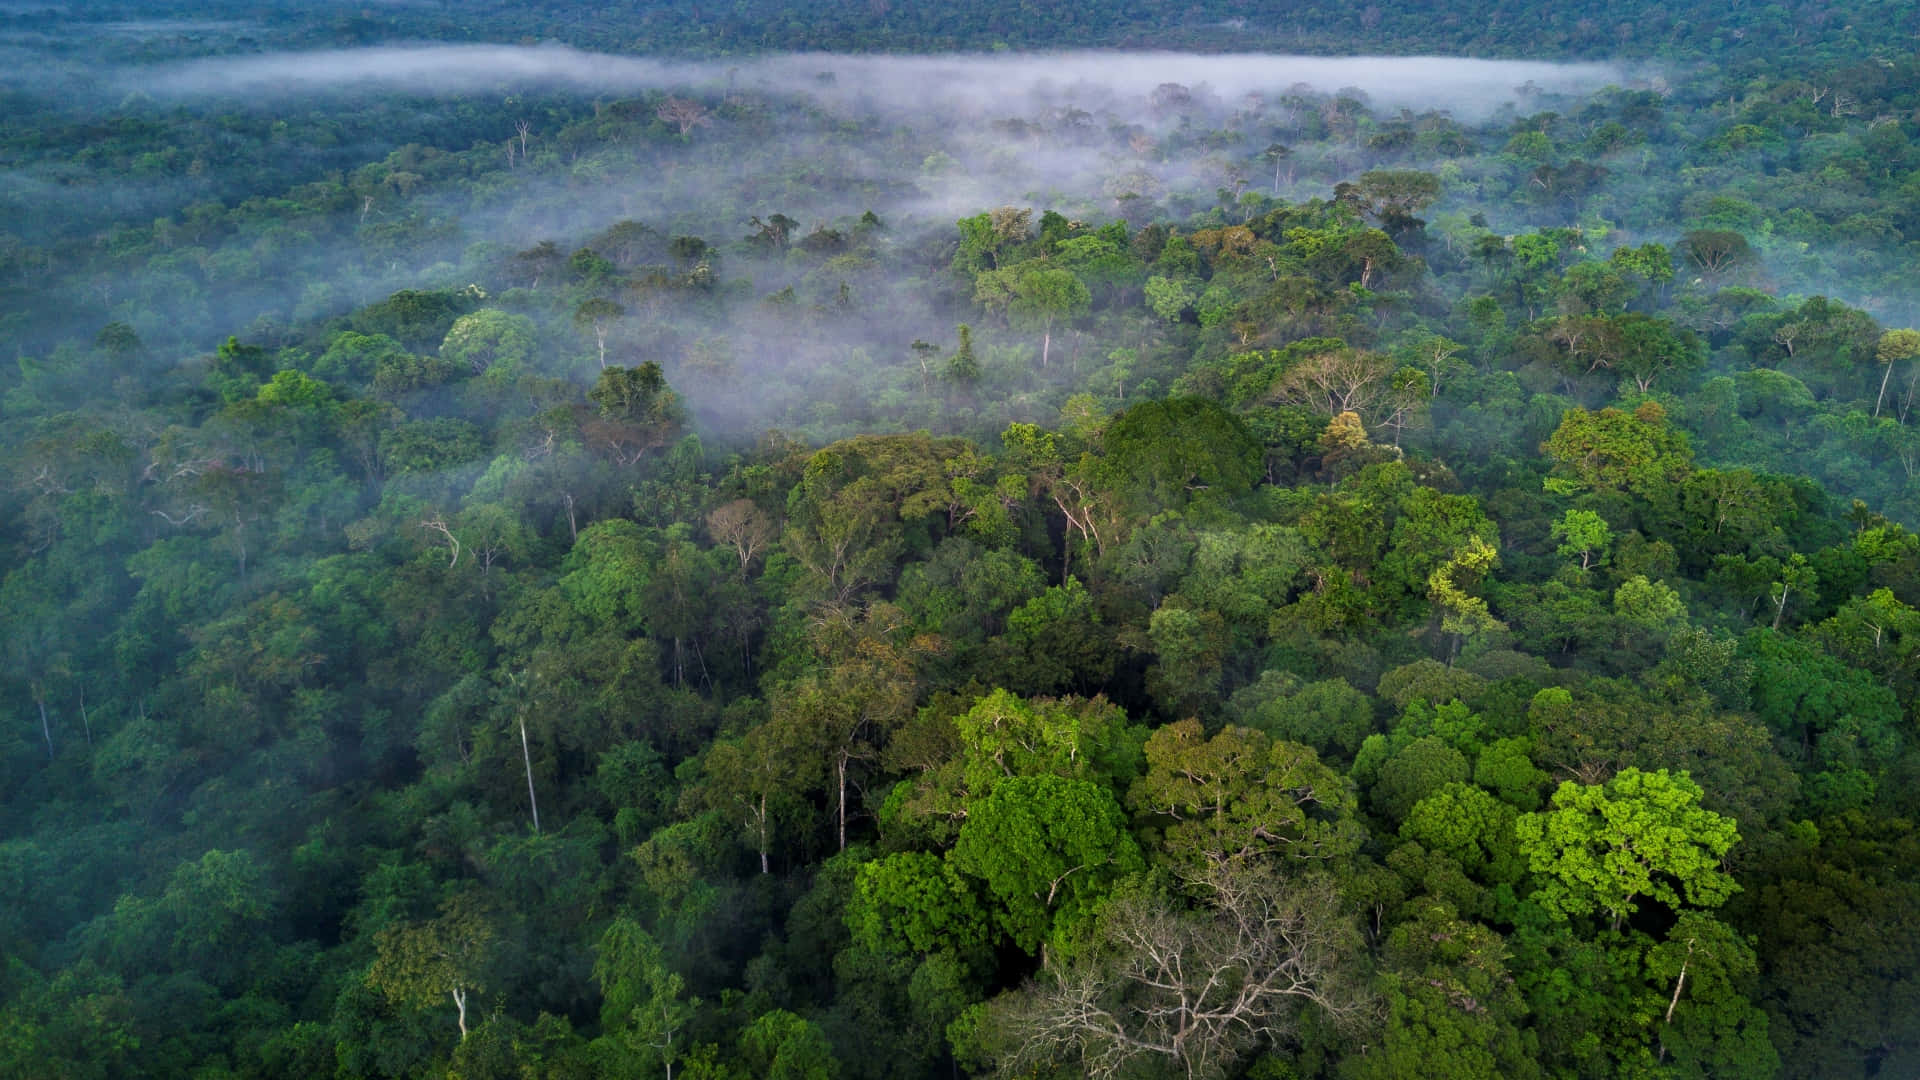 Vistaaérea De La Selva Tropical En Indonesia